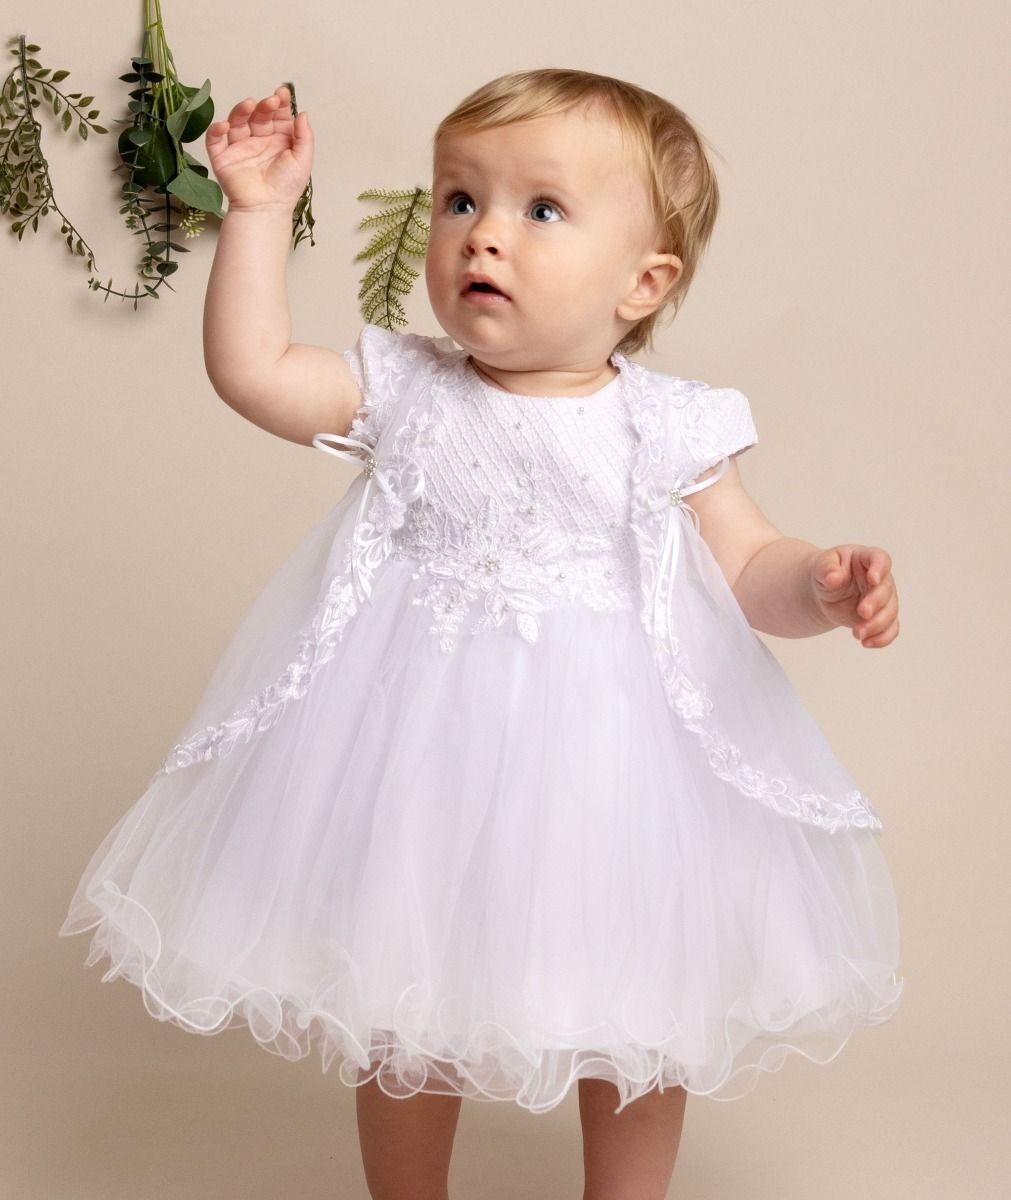 Baby Girls White Tulle Christening Dress Set - FAITH